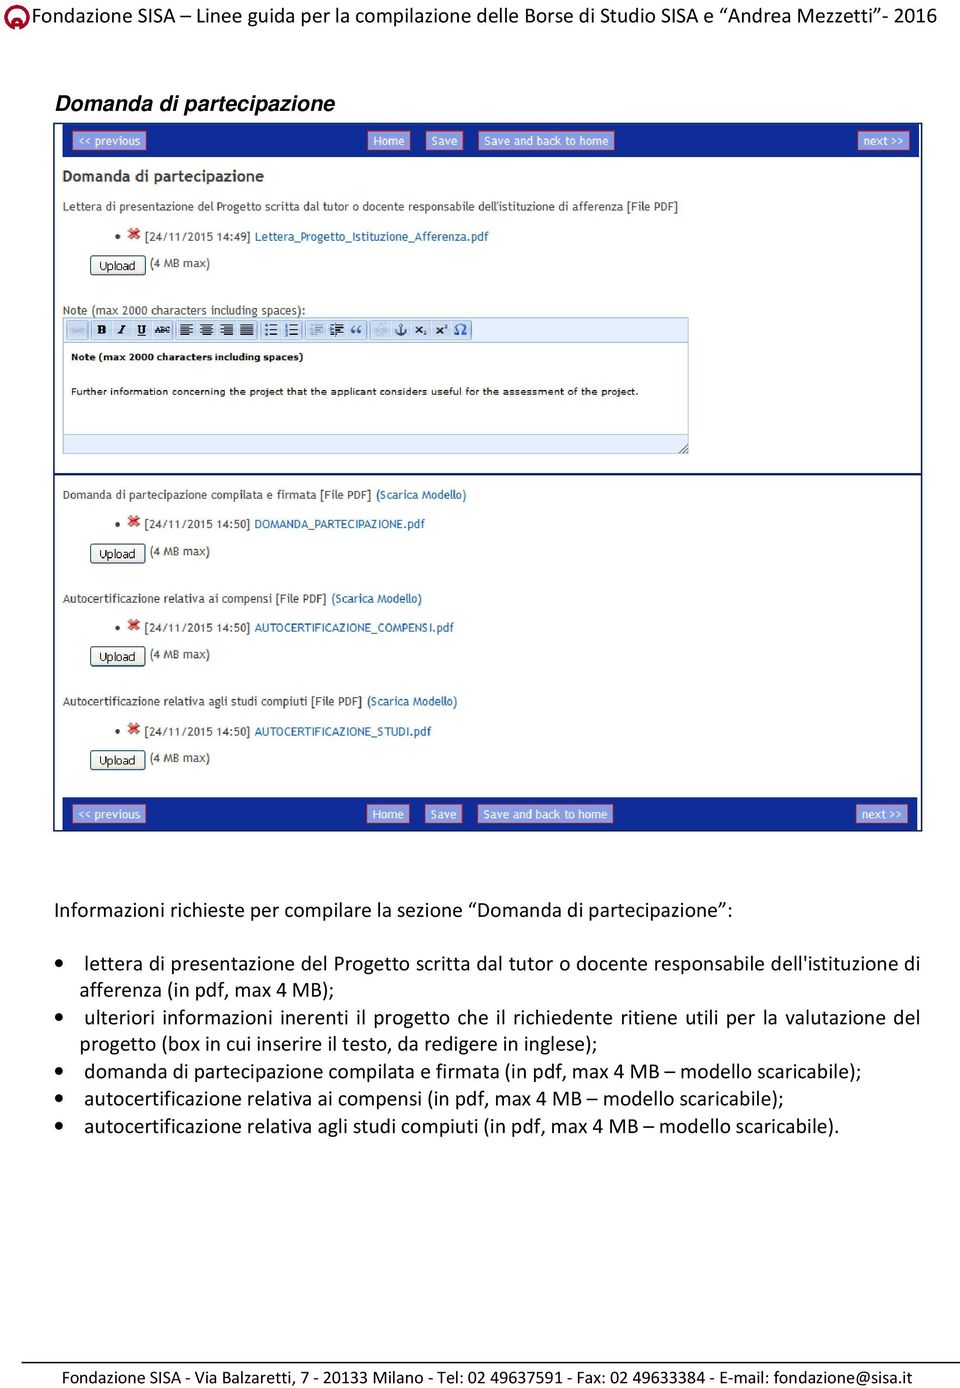 valutazione del progetto (box in cui inserire il testo, da redigere in inglese); domanda di partecipazione compilata e firmata (in pdf, max 4 MB modello